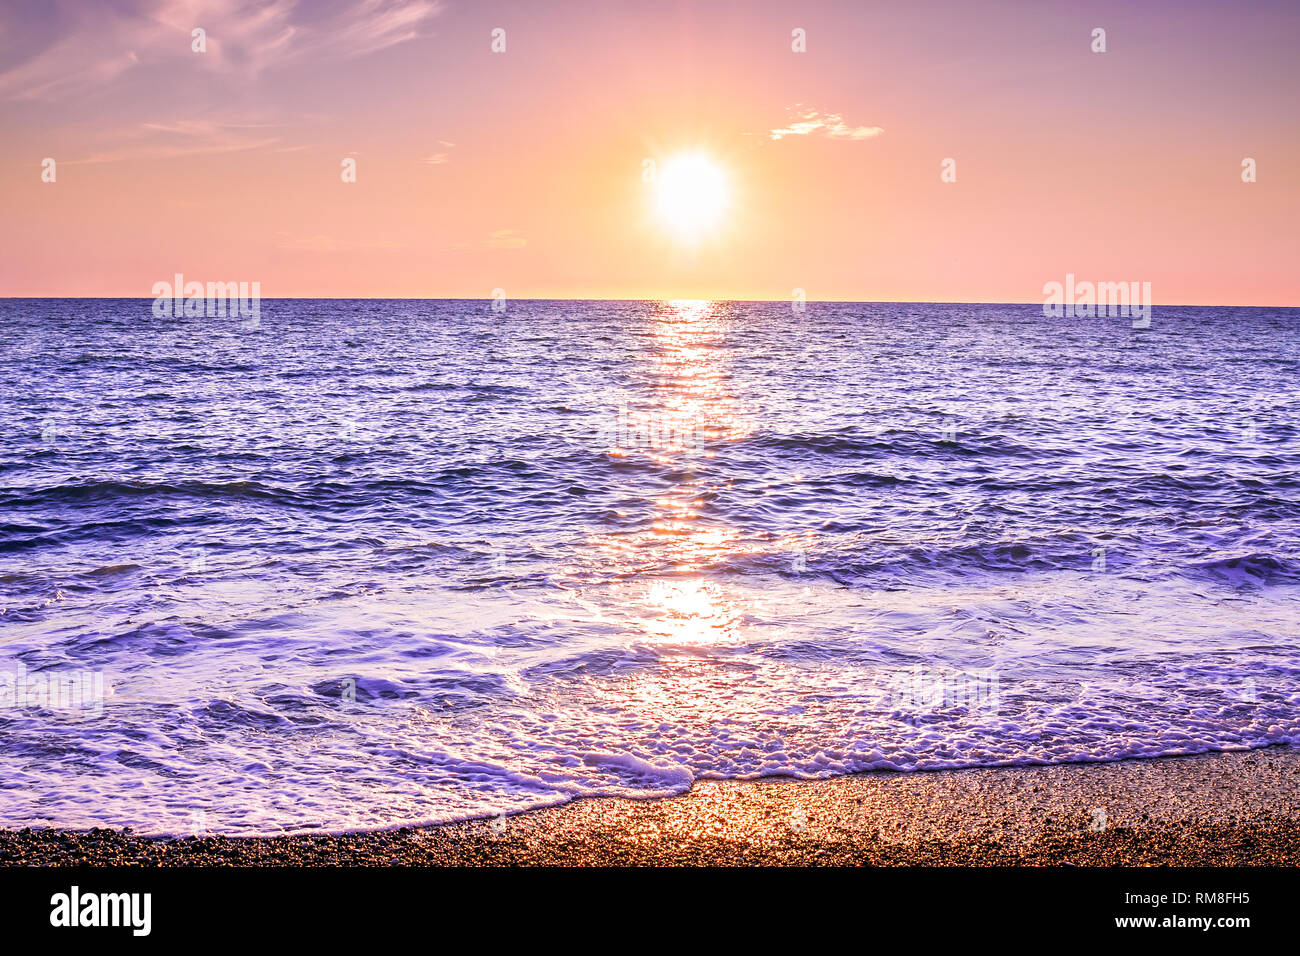 Paisaje púrpura con el mar y la puesta de sol. sol vespertino sobre el océano. El hermoso paisaje con puesta de sol sobre el mar vista panorámica Foto de stock